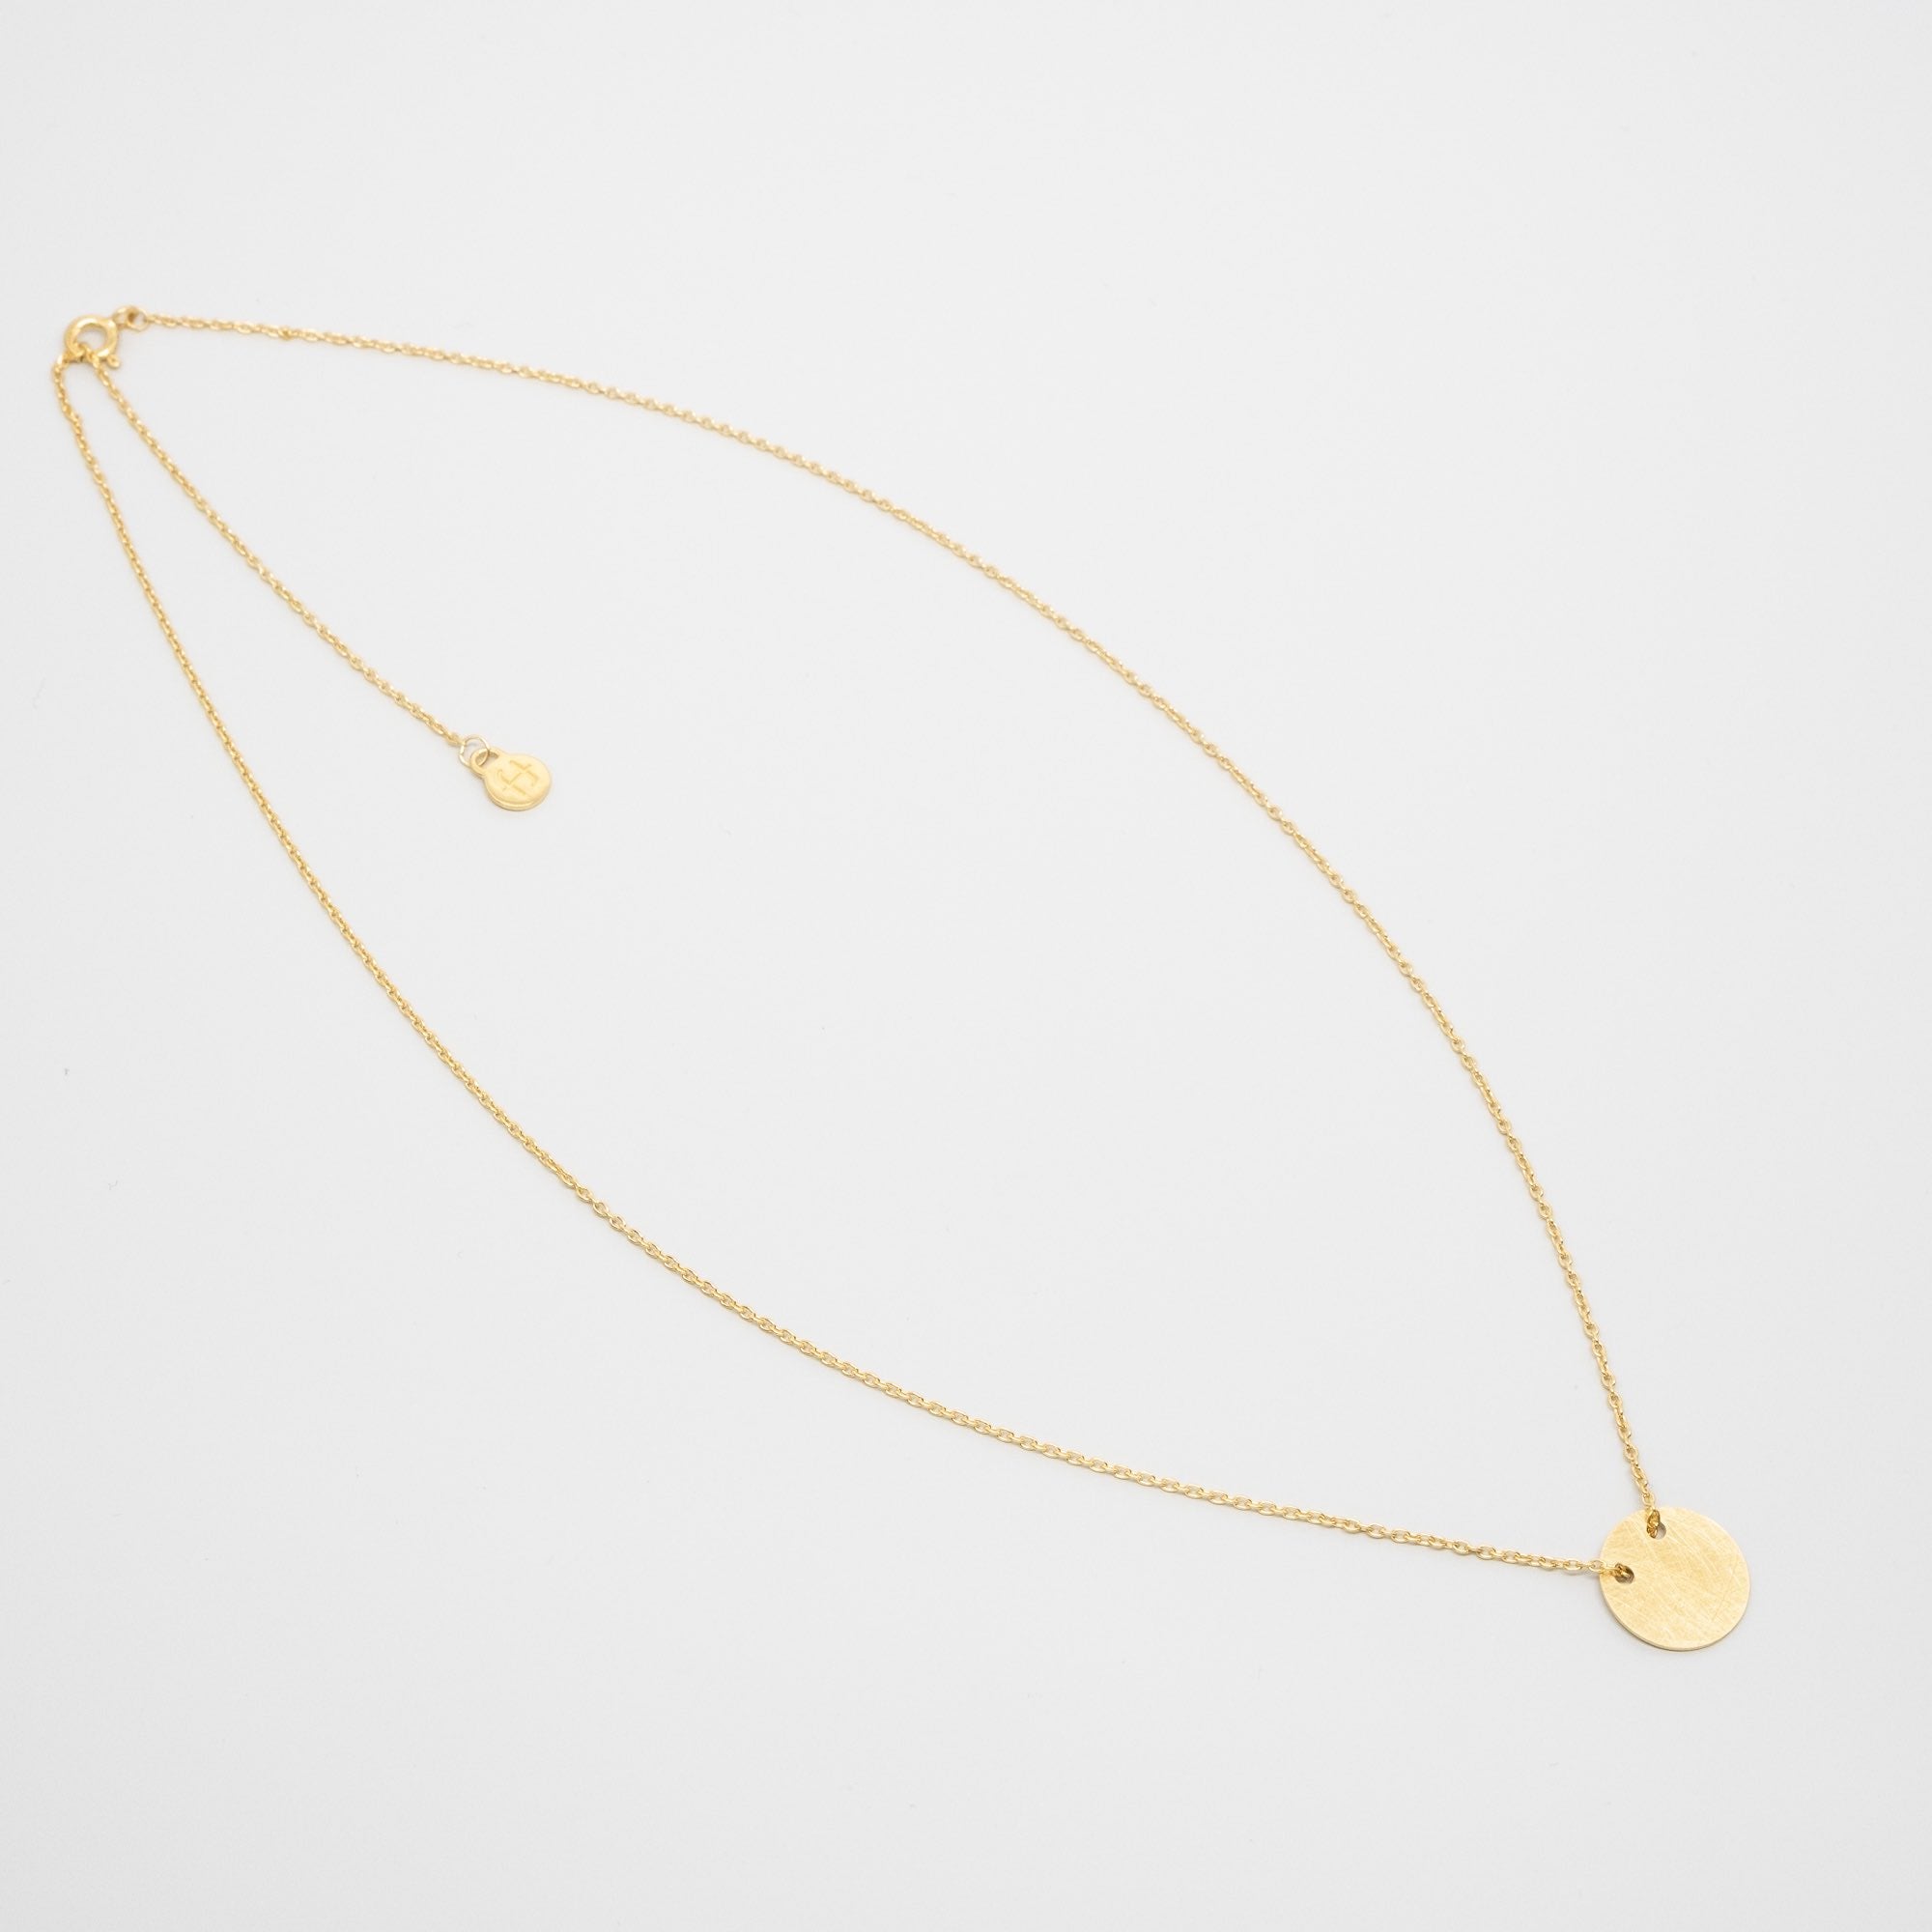 Halskette mit flachen Disc Anhänger gold glänzend